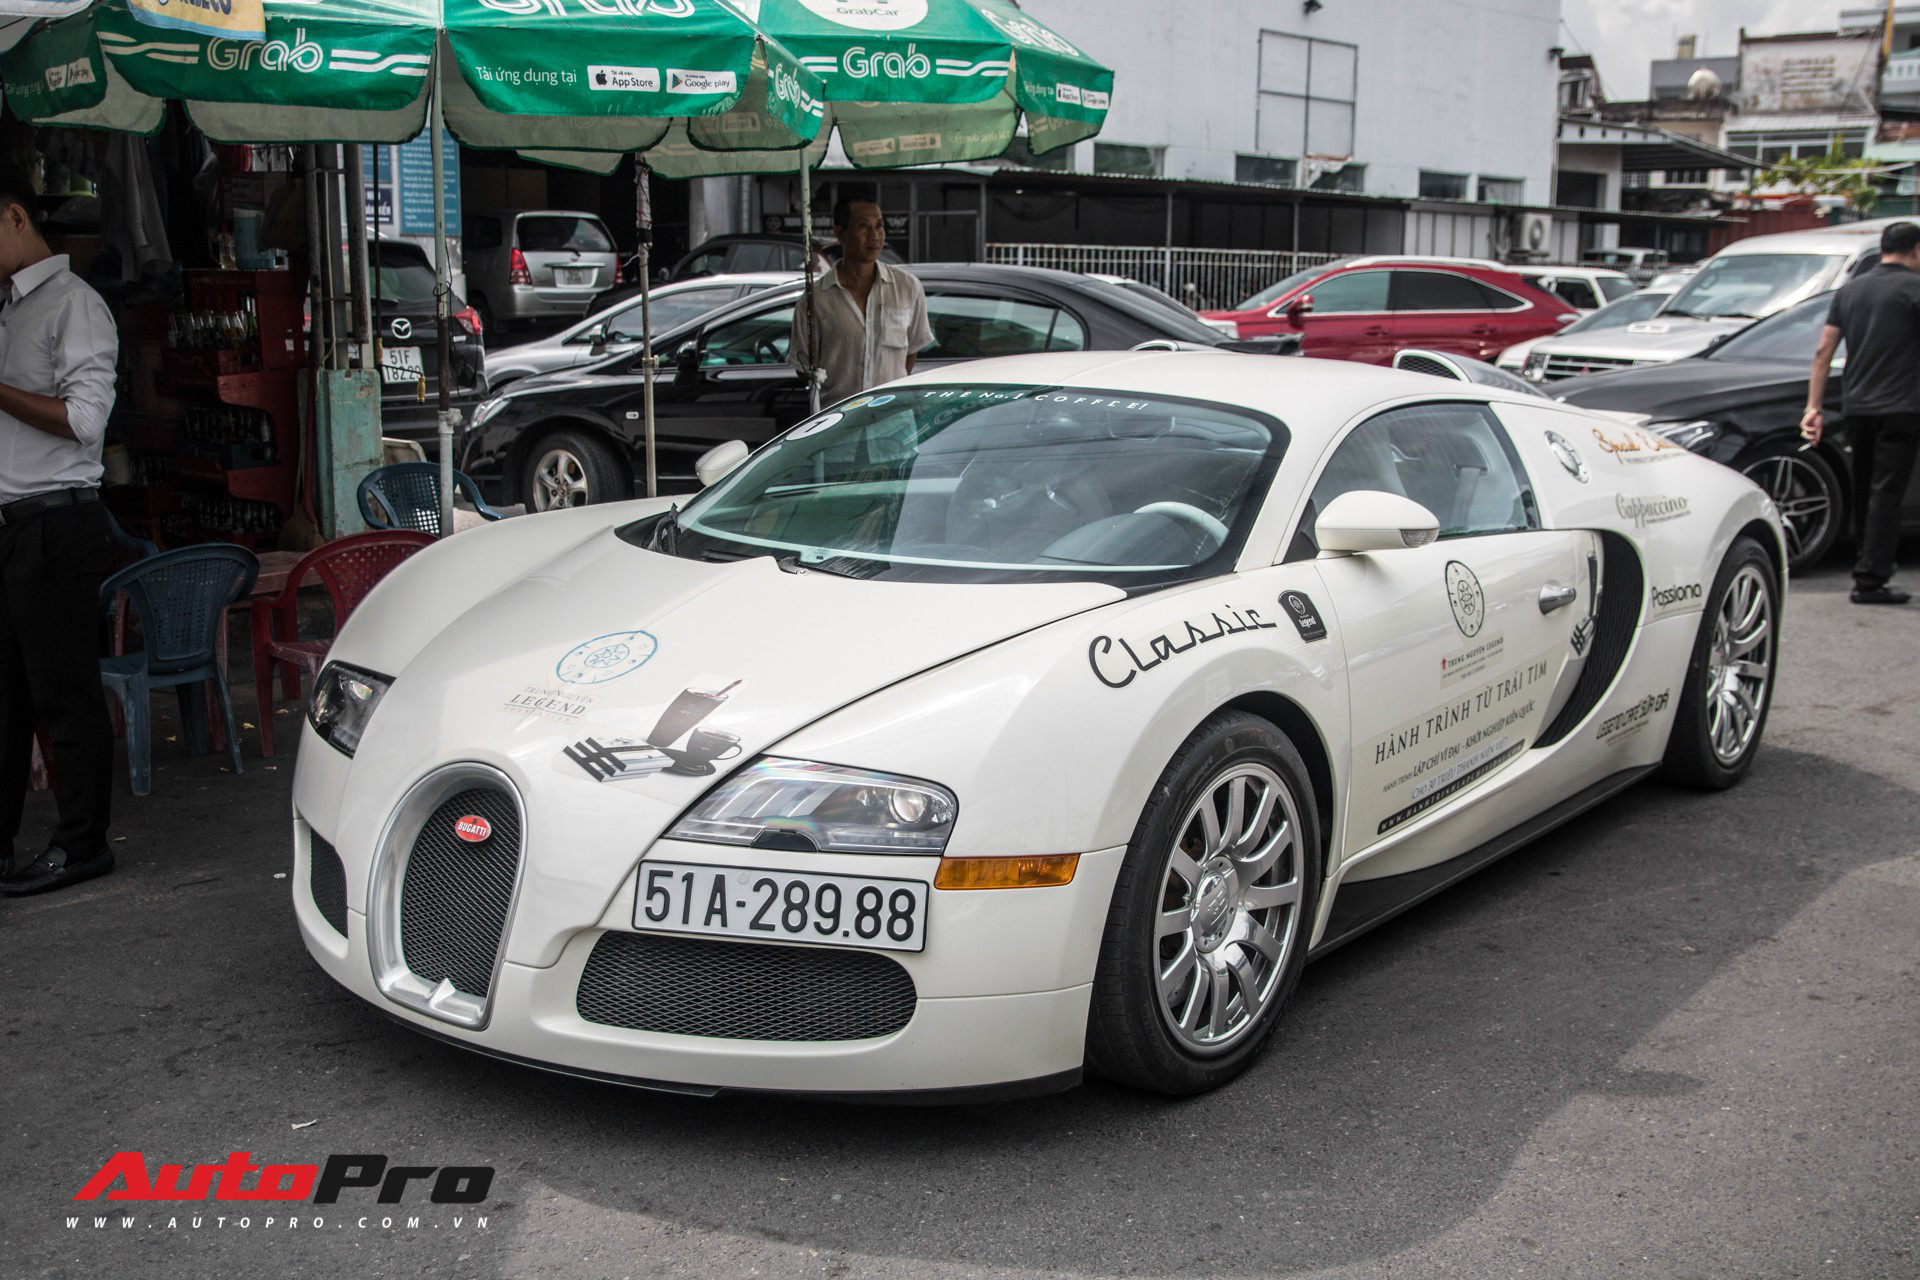 Hoá ra xe Bugatti sở hữu một hệ thống điều hoà khủng khiếp, chắc chắn khiến nhiều đại gia Việt bất ngờ